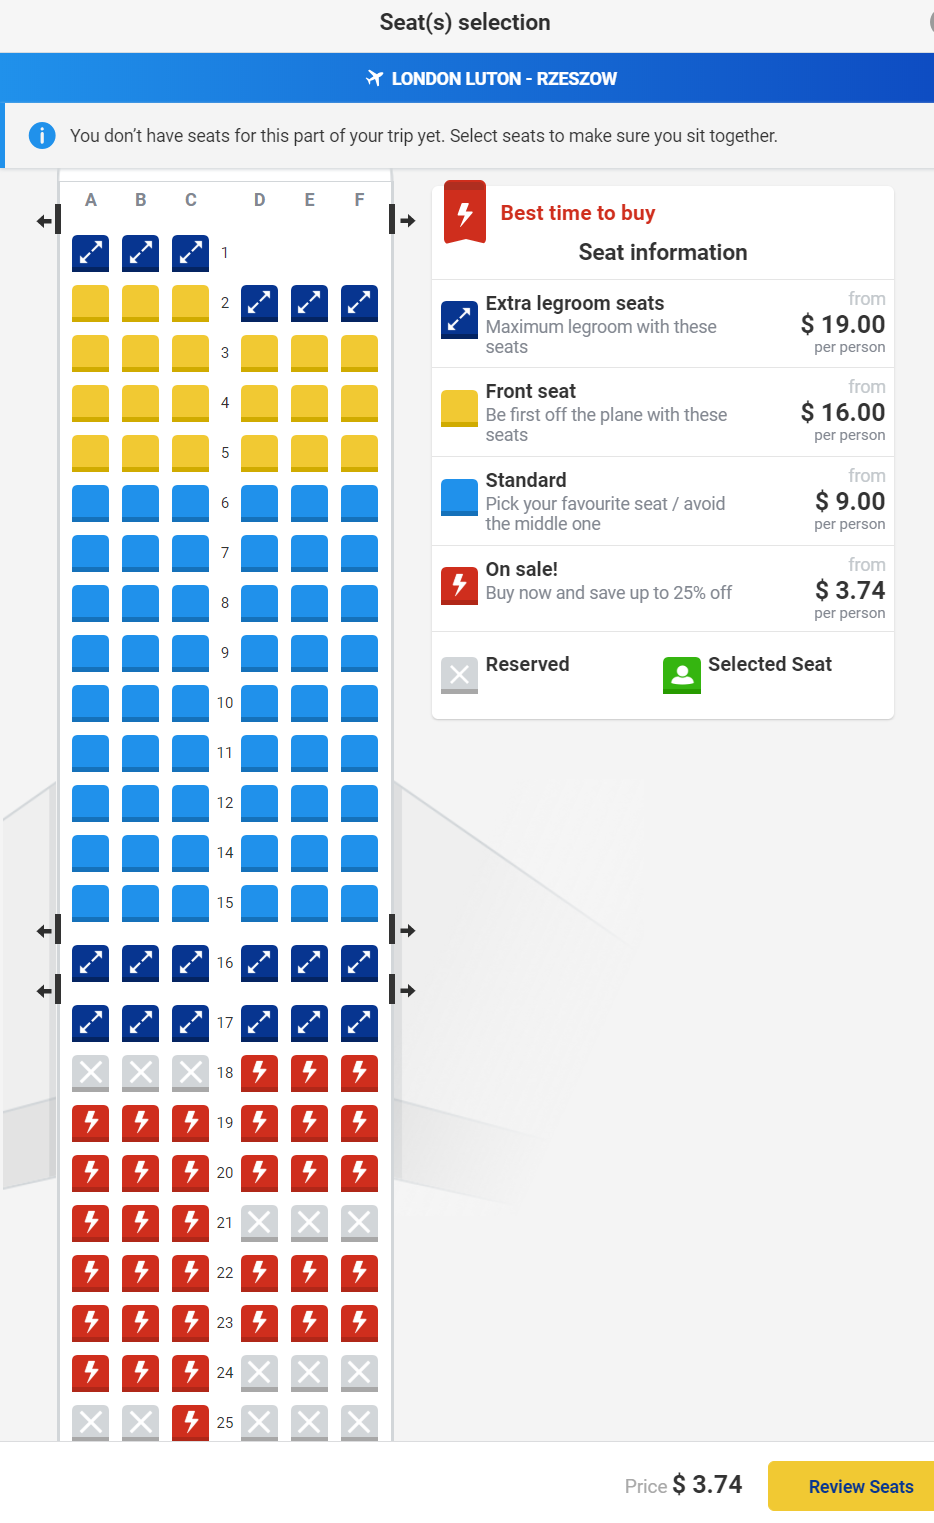 Ryanair Seating Chart